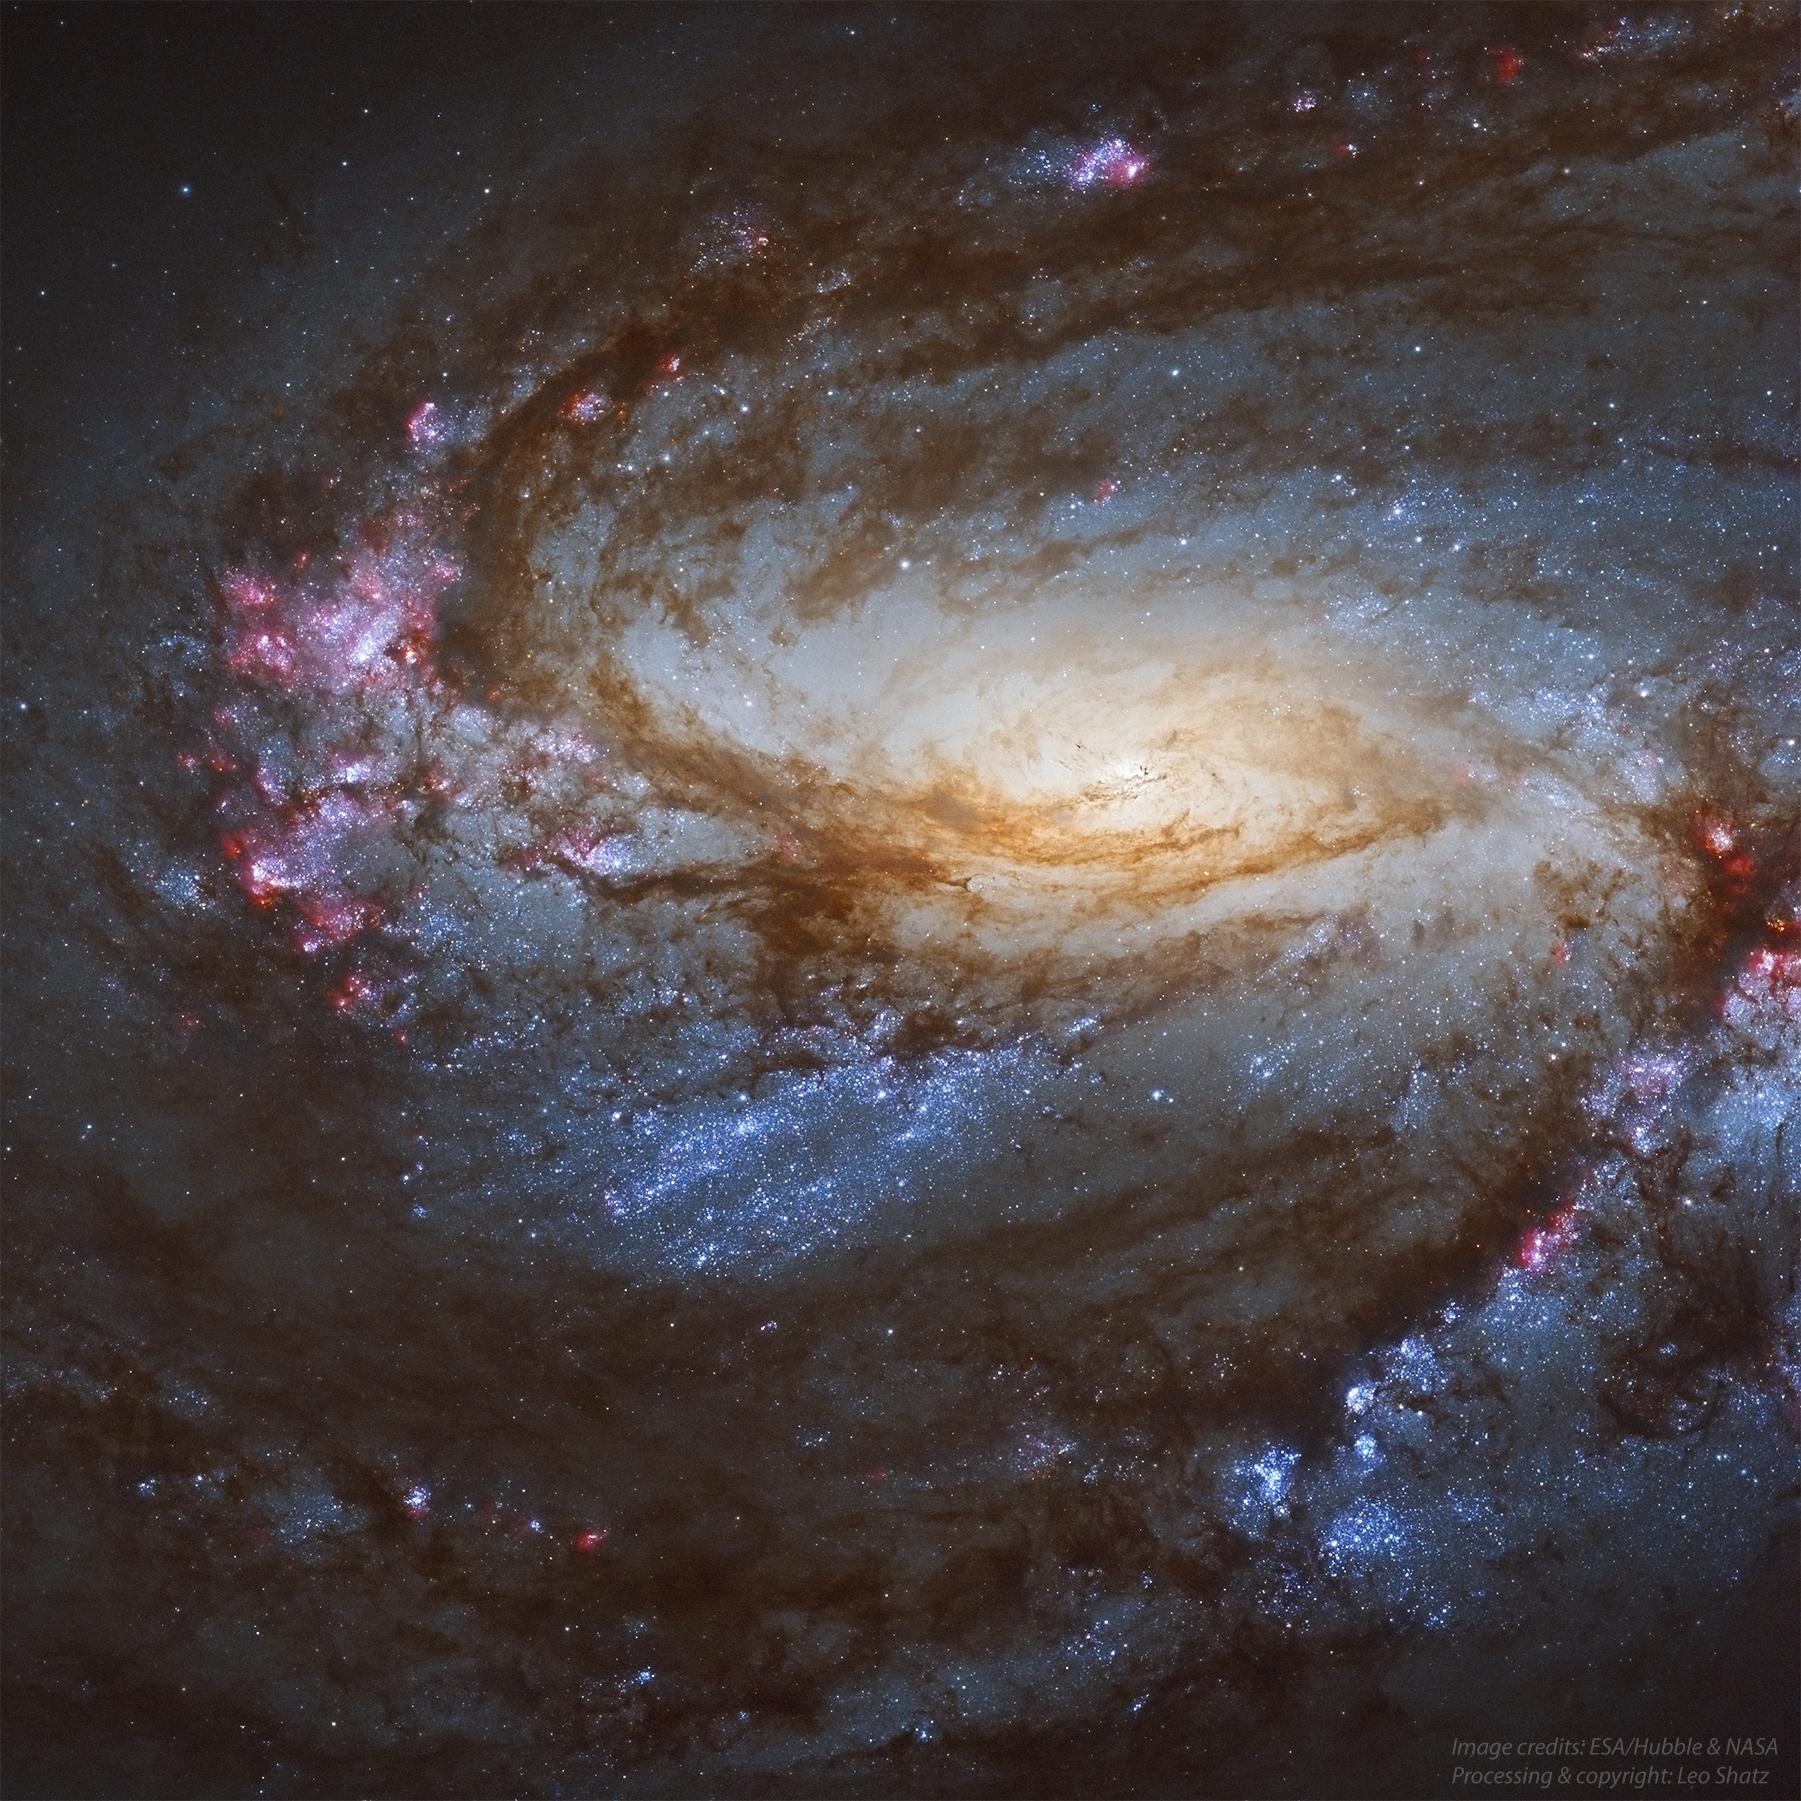 تُظهر الصورة مجرة مِسييه 66 الحلزونية كقرص أصفر متوهج مائل باتجاه خط بصرنا، ومحاطاً بأذرعٍ حلزونية مليئة بالغبار وبالنجوم الفتية الزرقاء. وتظهر بعض المناطق بلون ورديّ مما يدل على أنها مناطق تشكل نجوم.